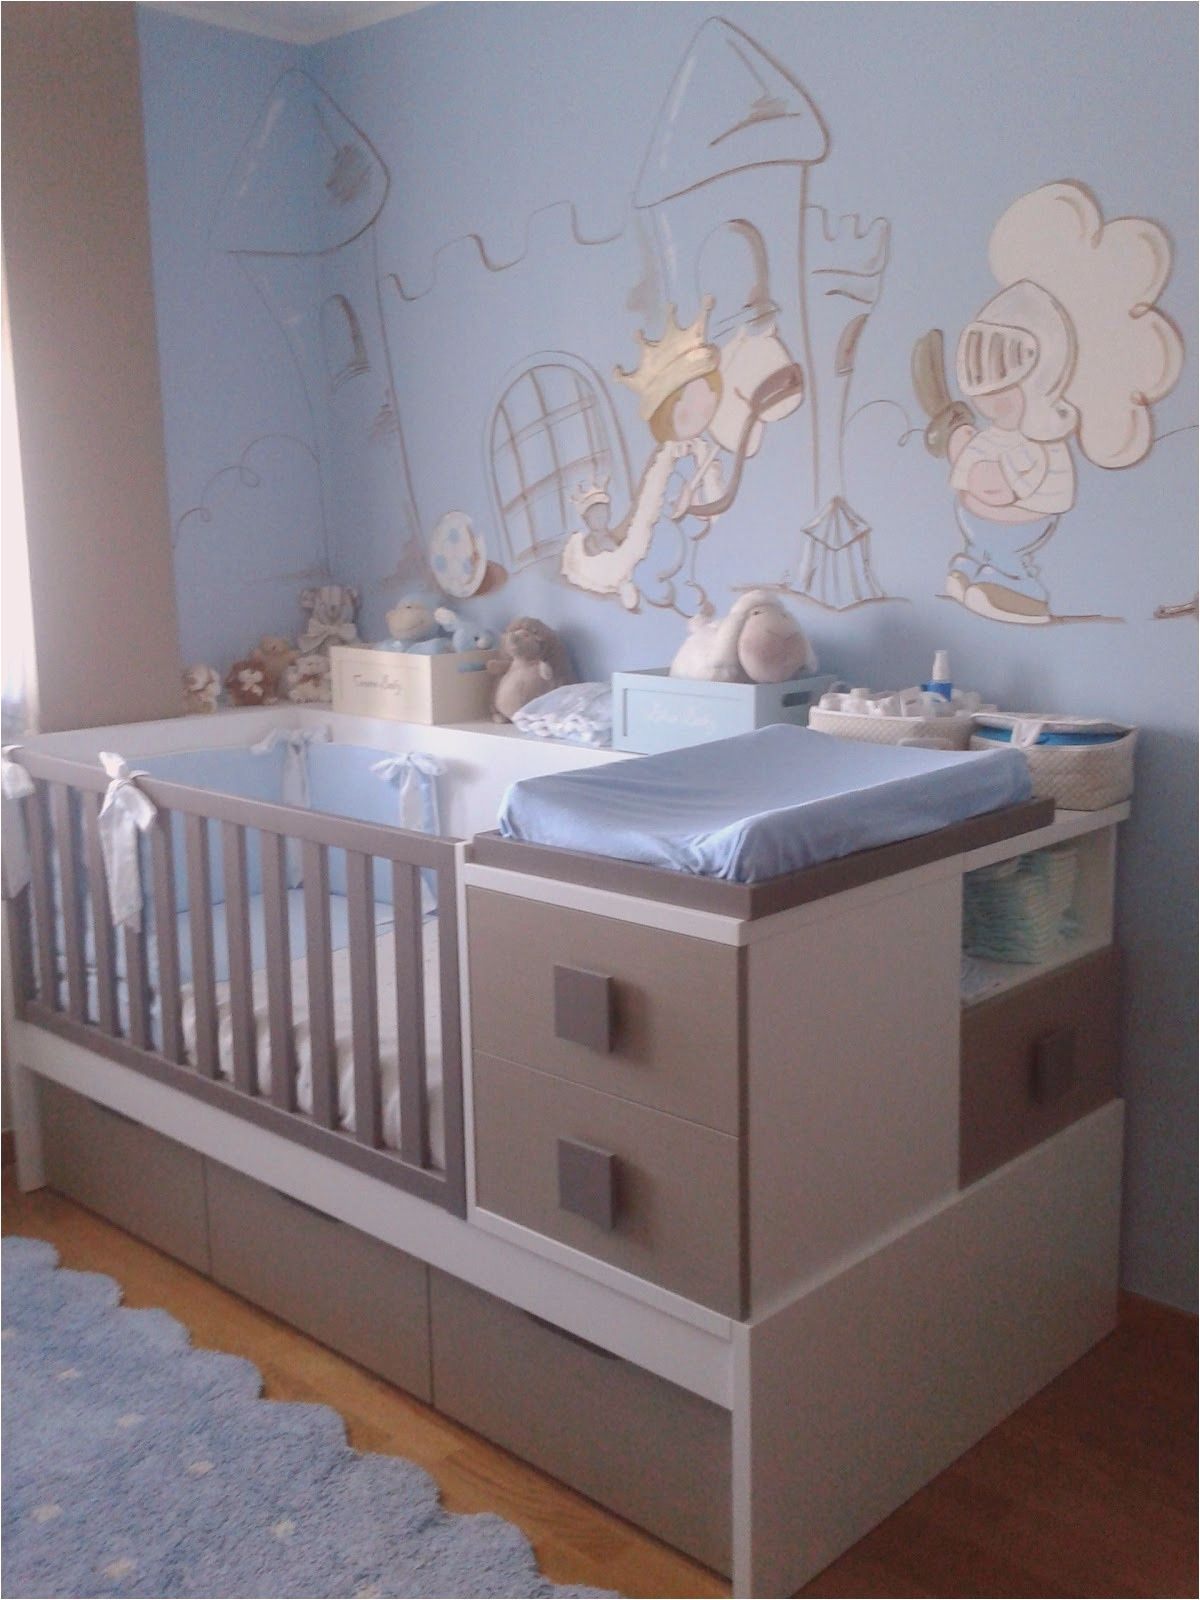 lit bebe gris inspirant luxury deco chambre bebe bleu de lit bebe gris